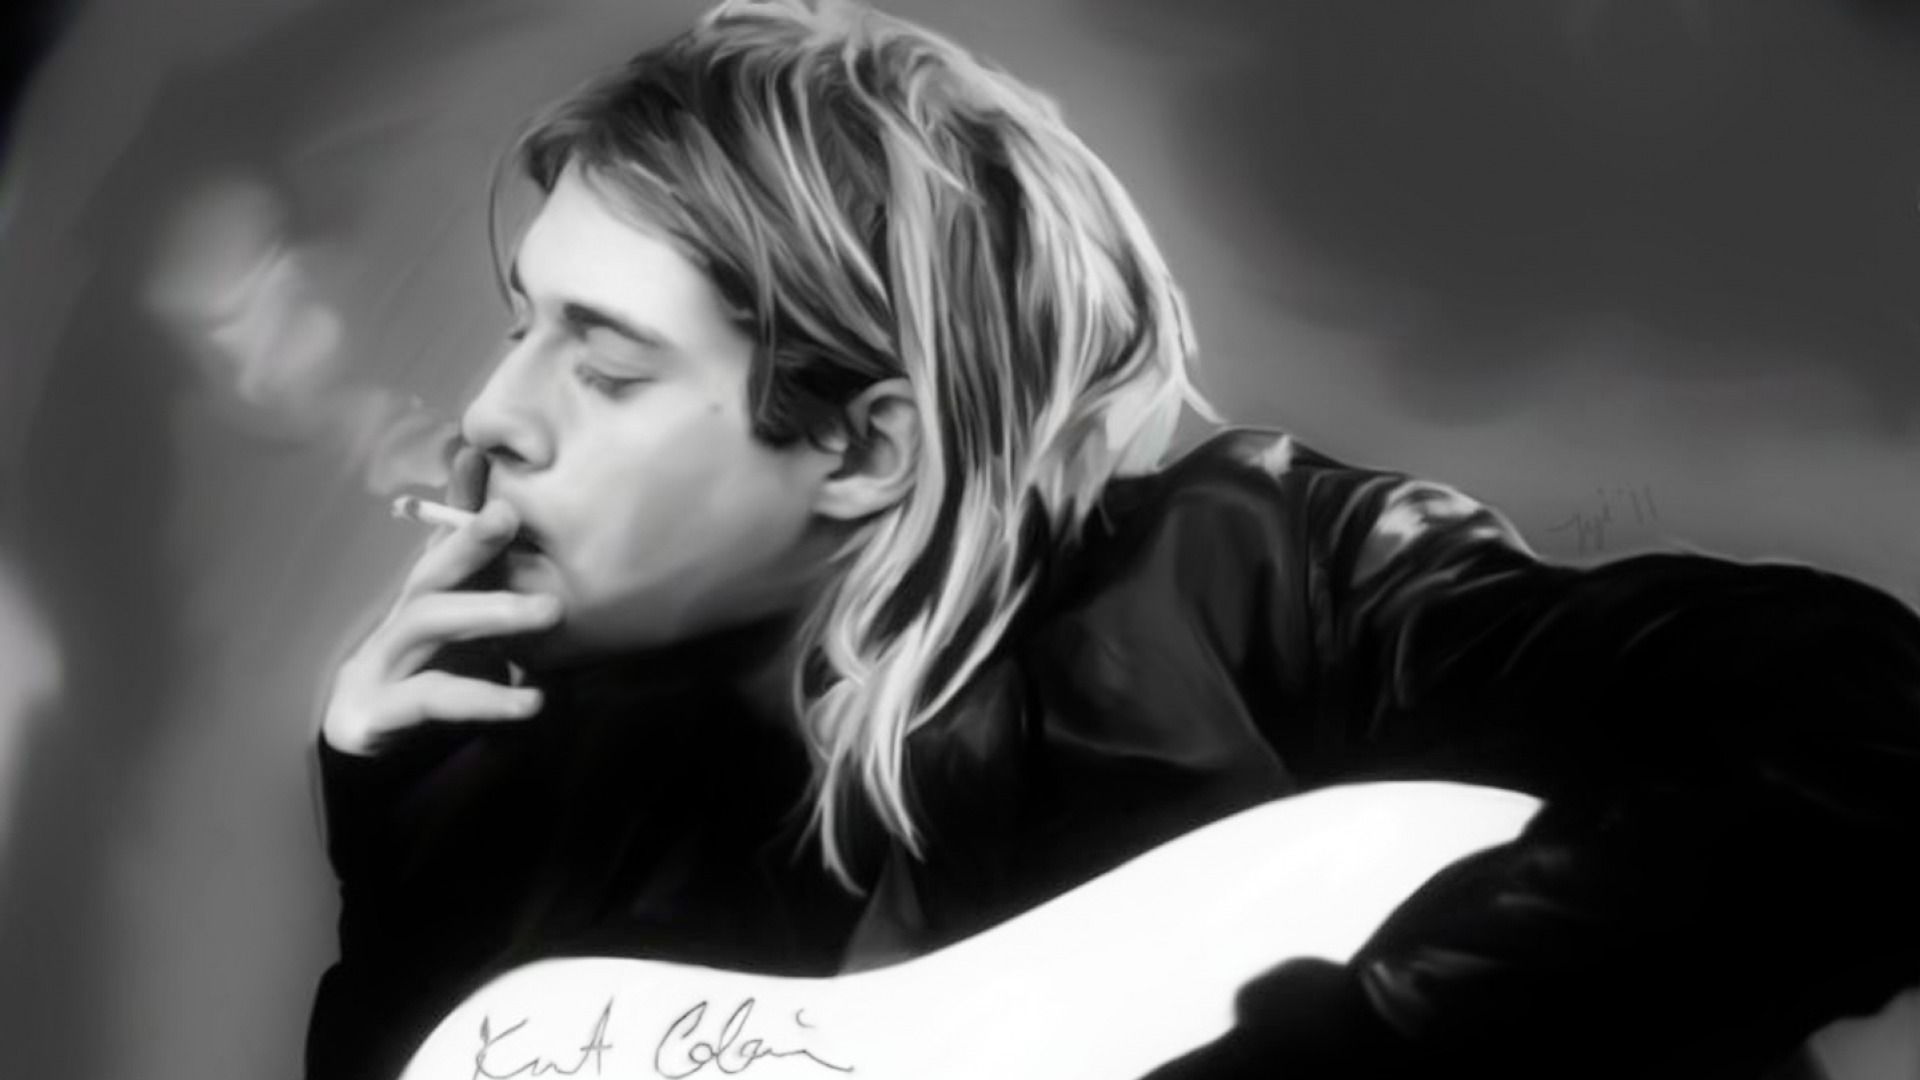 Kurt Cobain HD Wallpaper | 1920x1080 | ID:45556